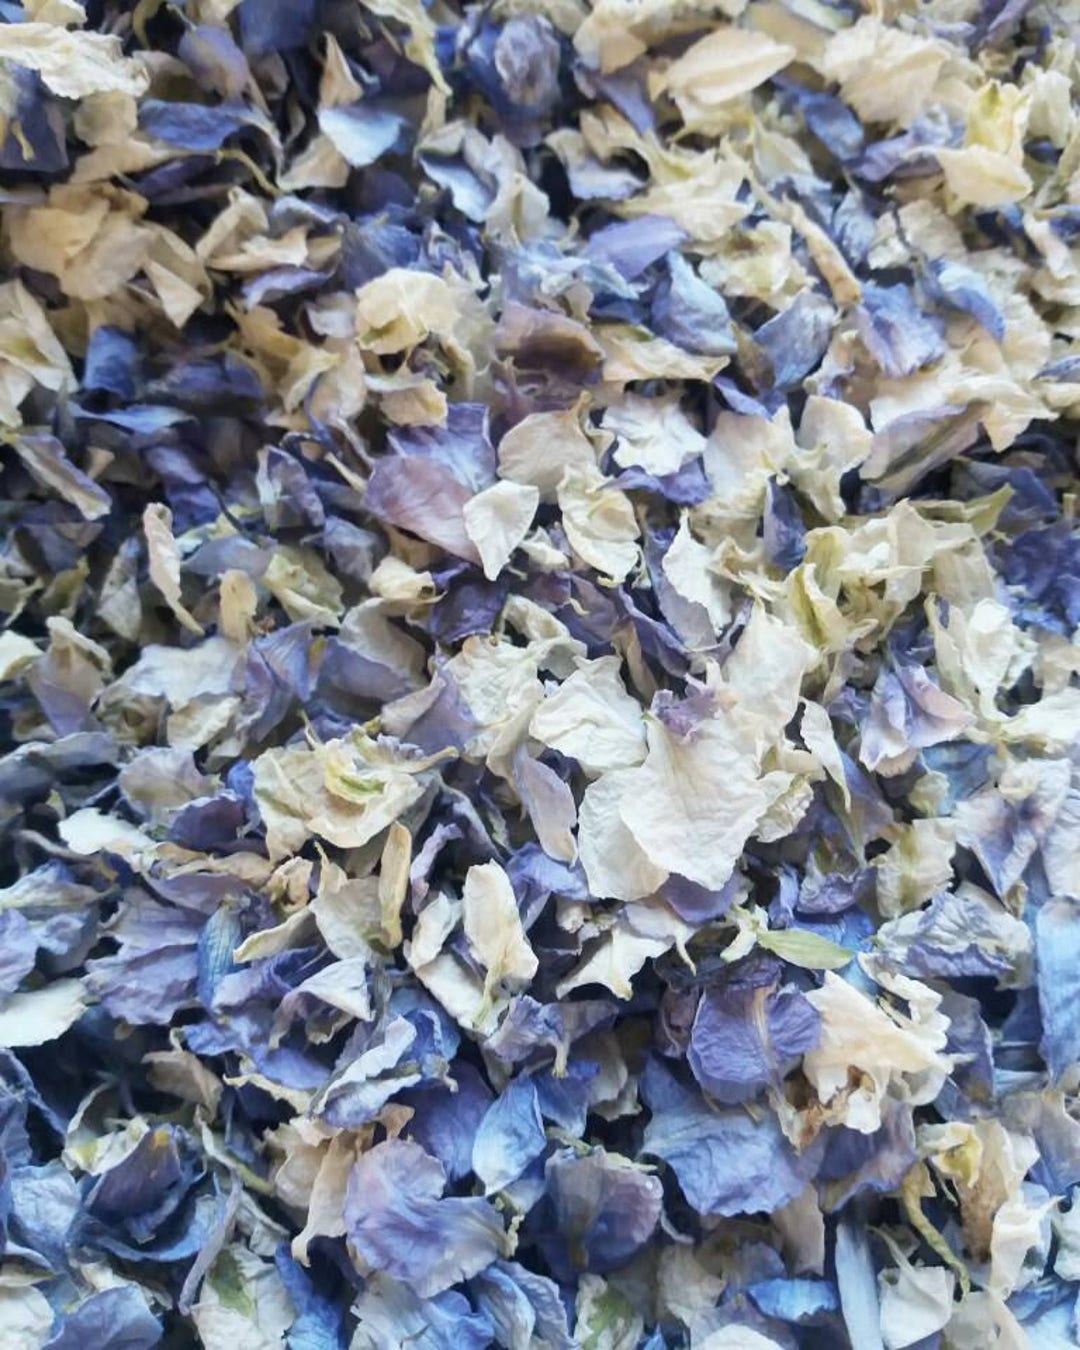 Dried Flower Petal Confetti Tutorial - Polka Dot Wedding